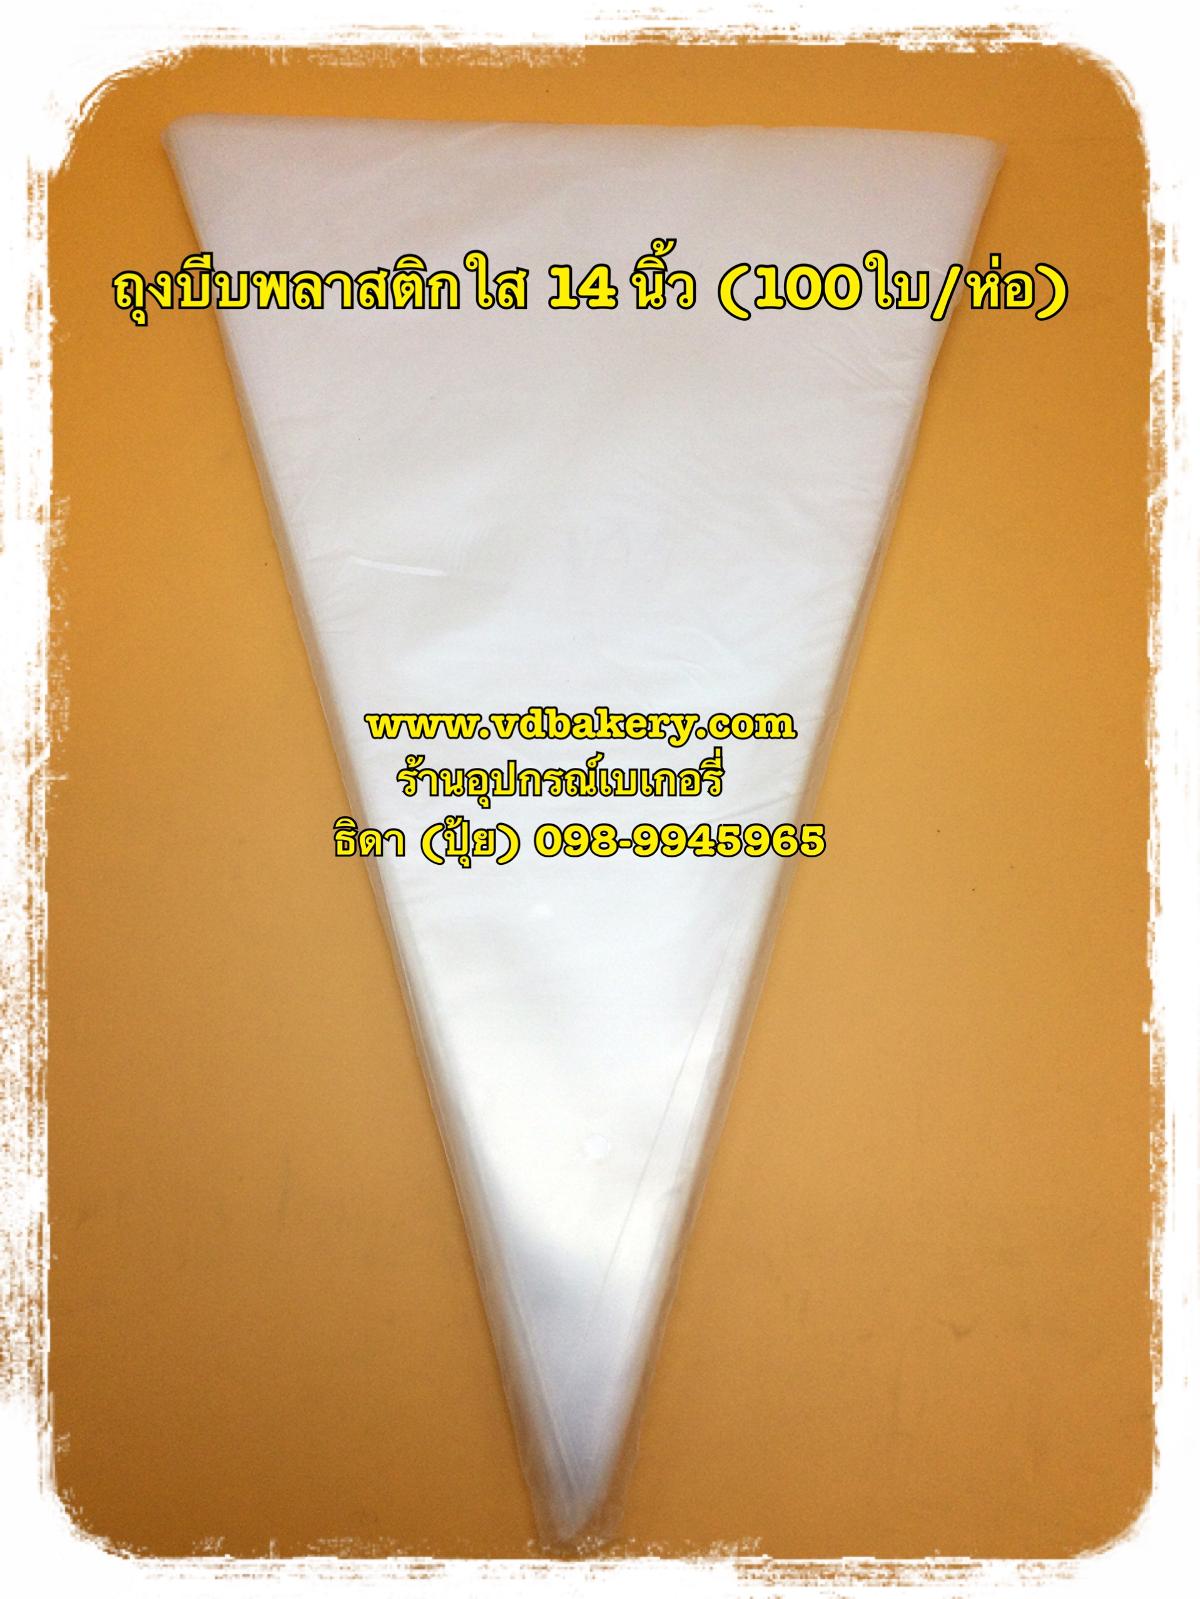 (410081) ถุงบีบพลาสติกใส ขนาด 14